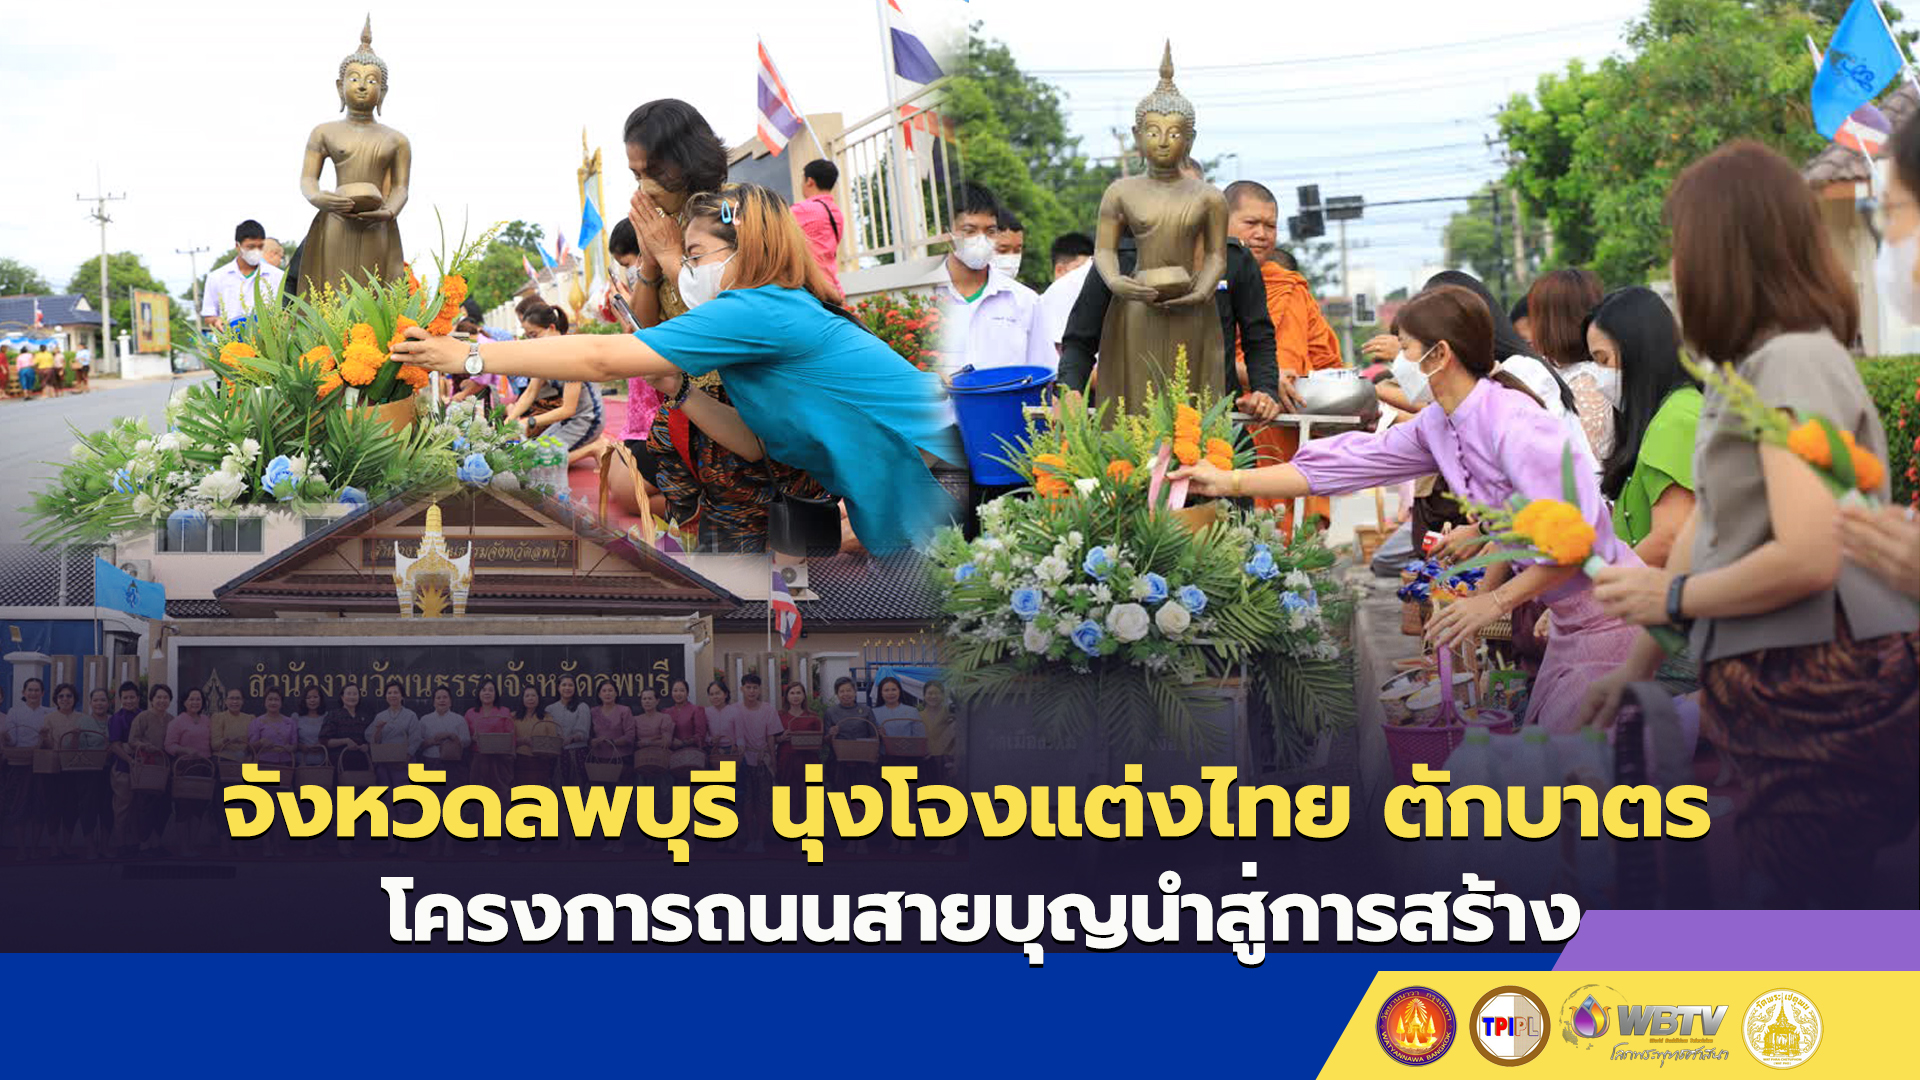 จังหวัดลพบุรี นุ่งโจงแต่งไทย ตักบาตร โครงการถนนสายบุญนำสู่การสร้าง